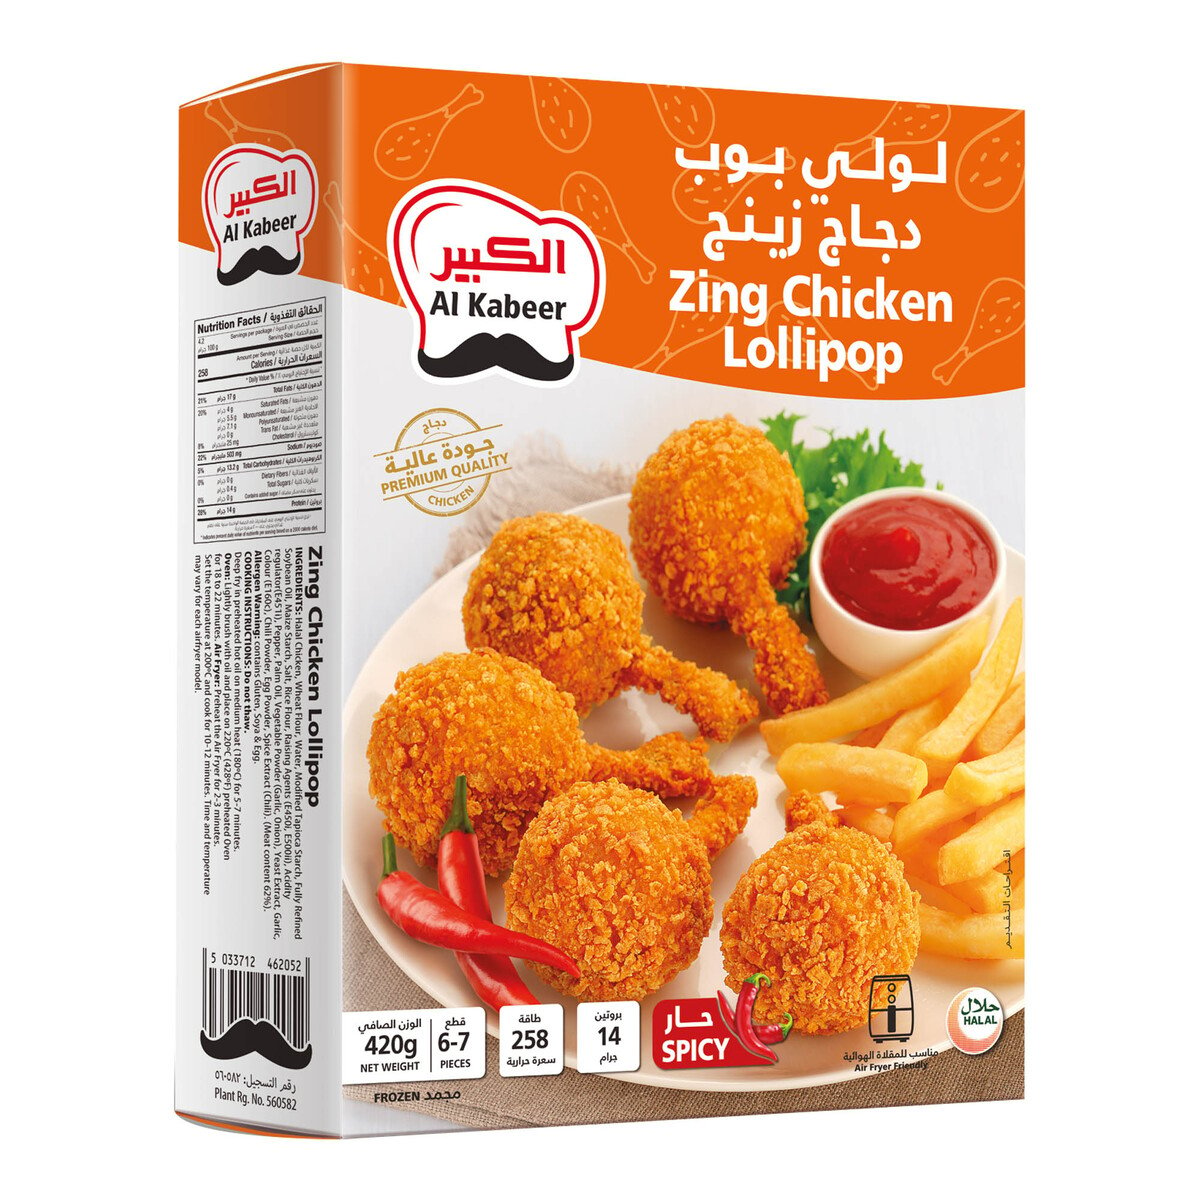 Al Kabeer Zing Chicken Lollipop 420 g